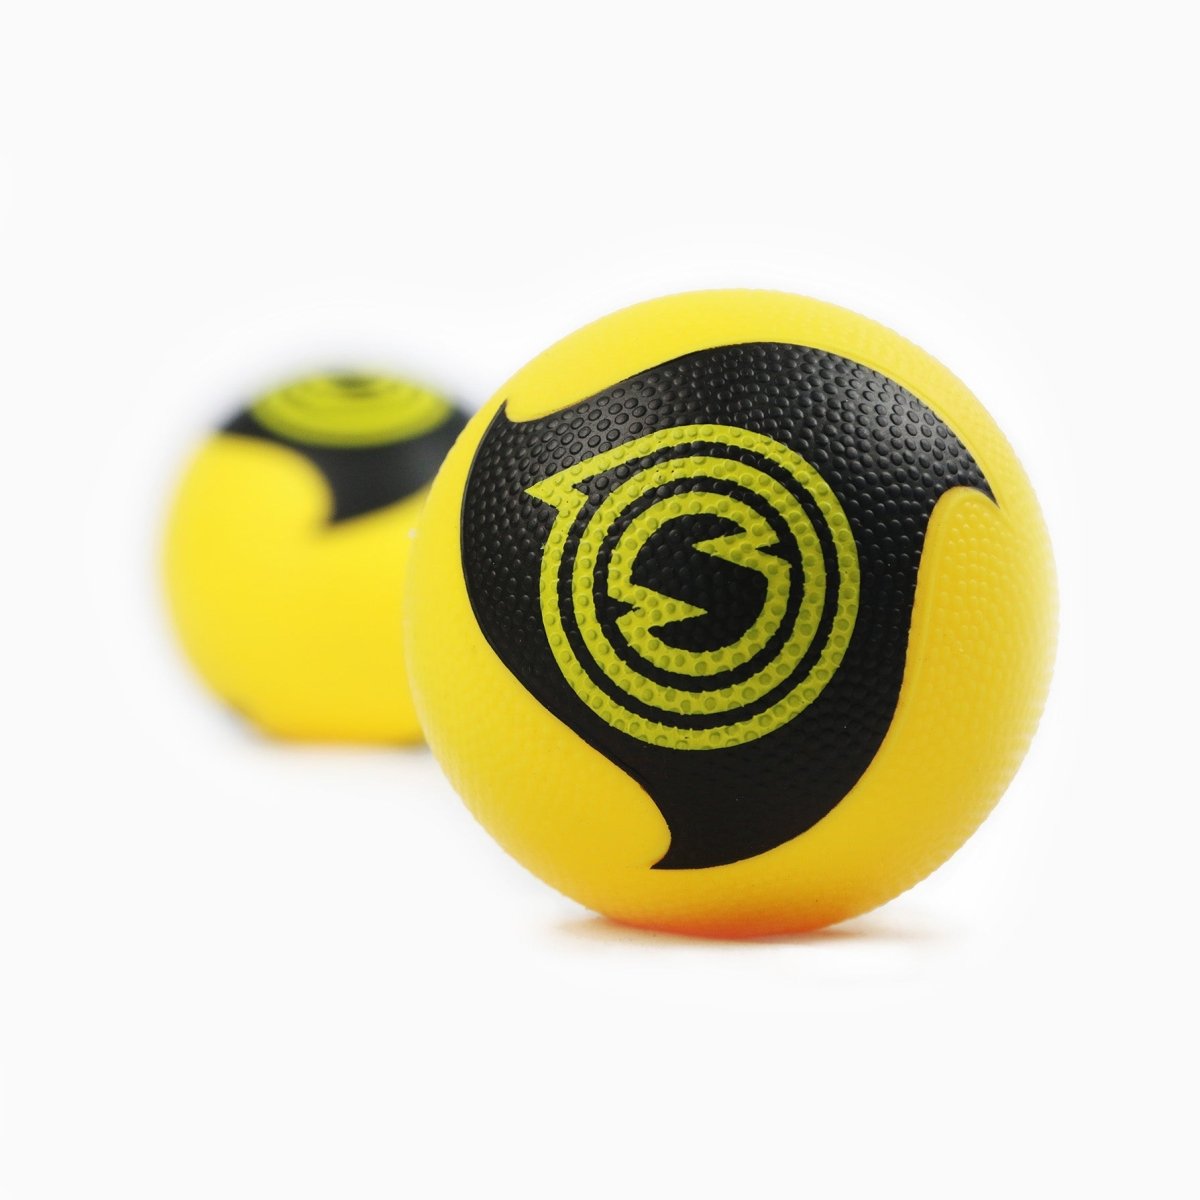 Spikeball Pro Set - Roundnet Marketplace - Spikeball - Sportartikel